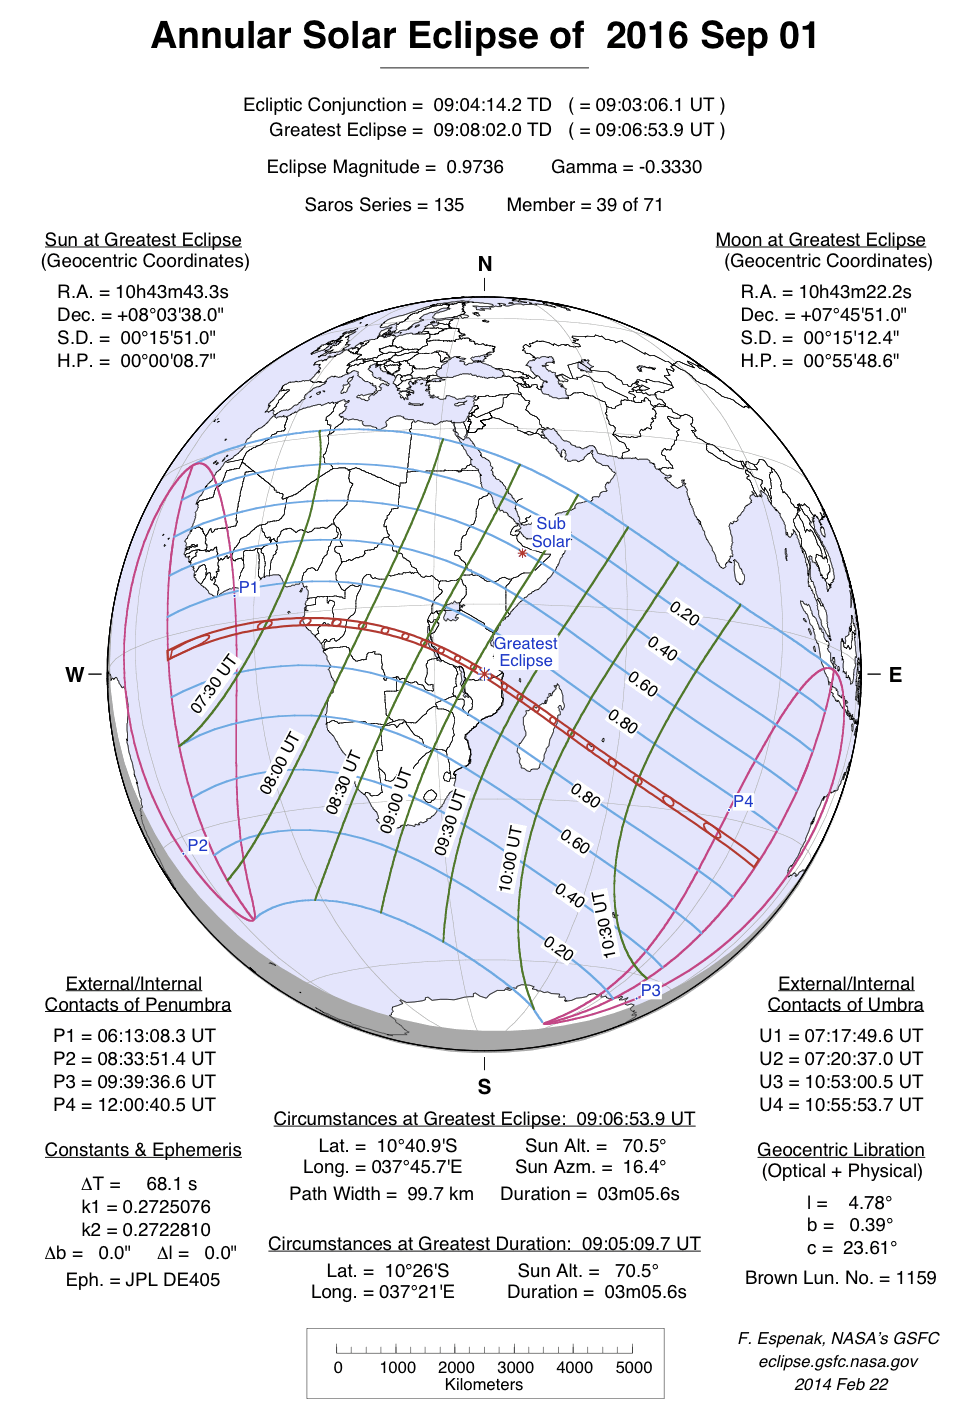 Verlauf der Ringförmigen Sonnenfinsternis am 01.09.2016